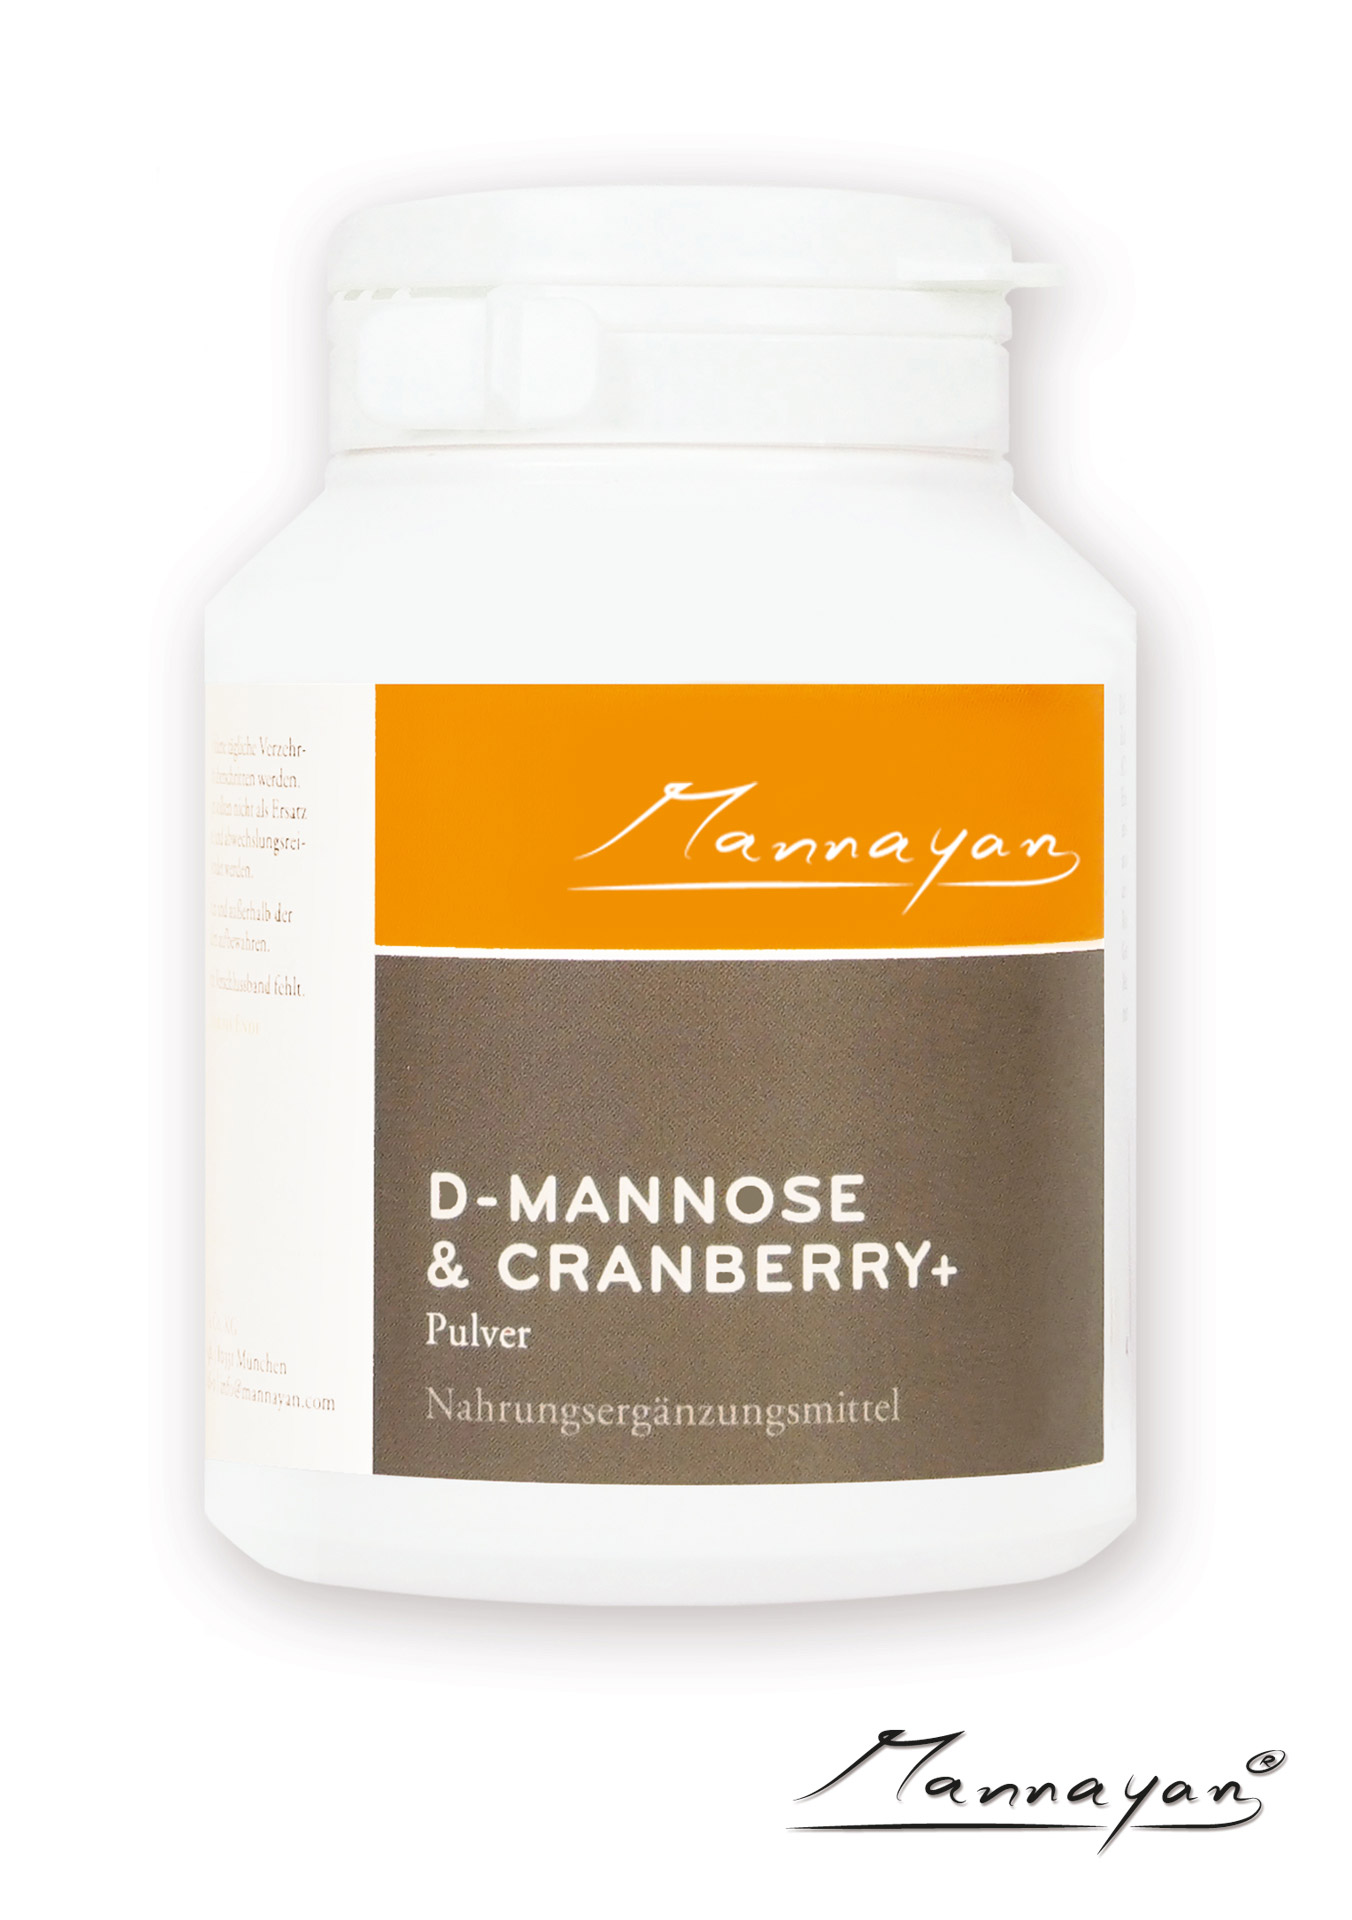 D-Mannose und Cranberry+ von Mannayan